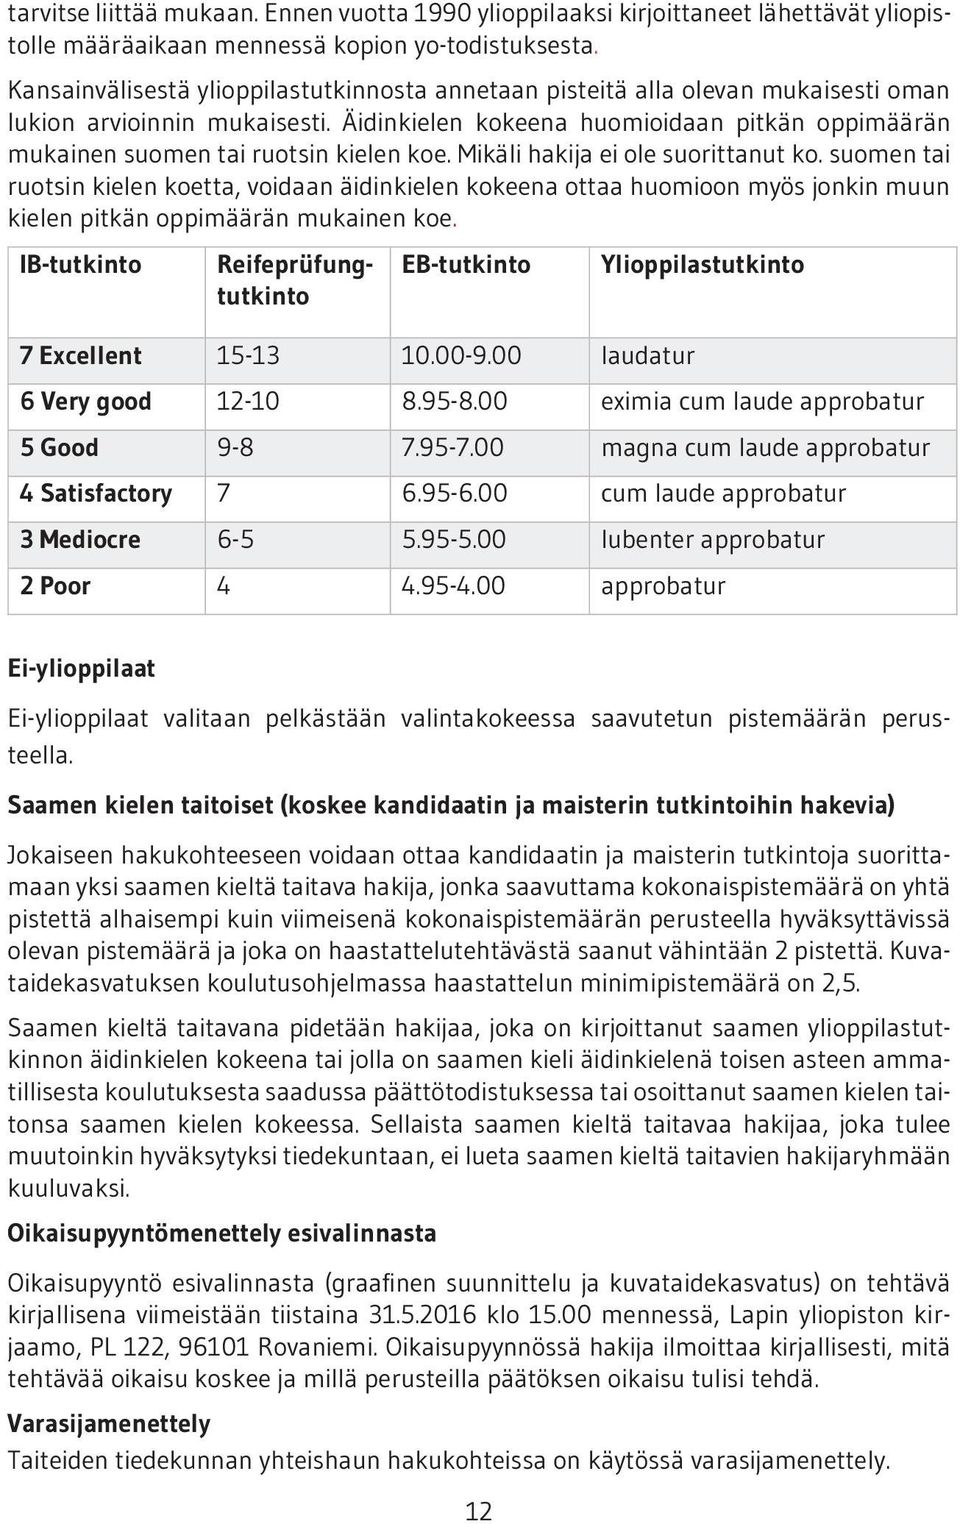 Äidinkielen kokeena huomioidaan pitkän oppimäärän mukainen suomen tai ruotsin kielen koe. Mikäli hakija ei ole suorittanut ko.